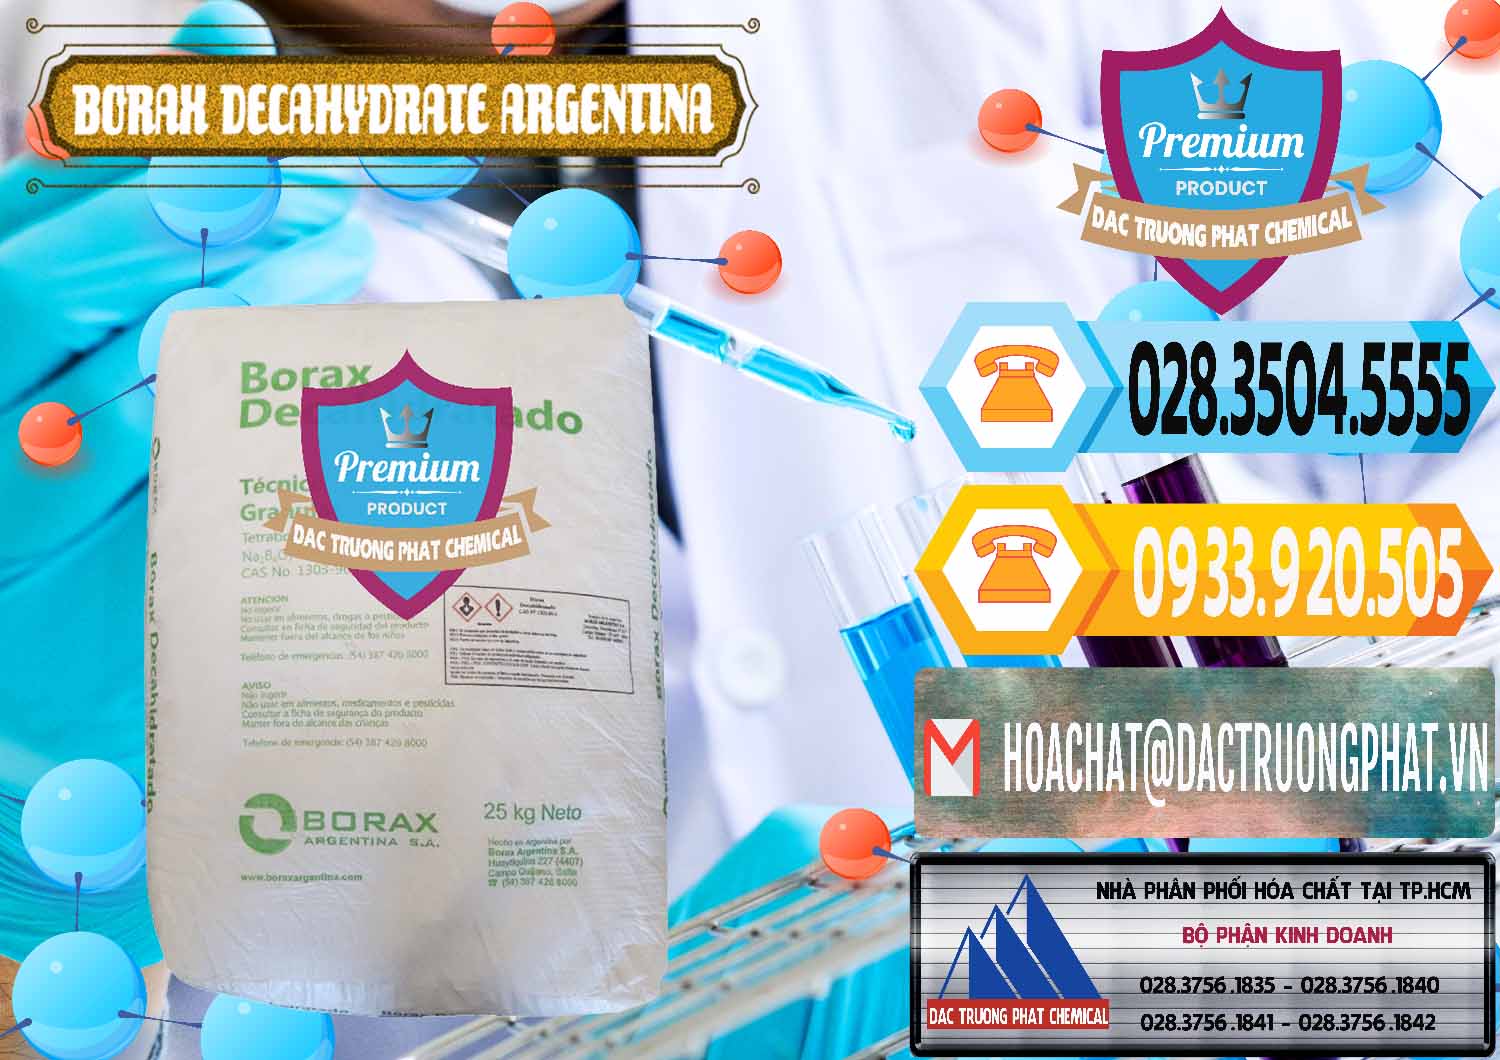 Cty chuyên cung cấp ( bán ) Borax Decahydrate Argentina - 0446 - Bán ( cung cấp ) hóa chất tại TP.HCM - hoachattayrua.net